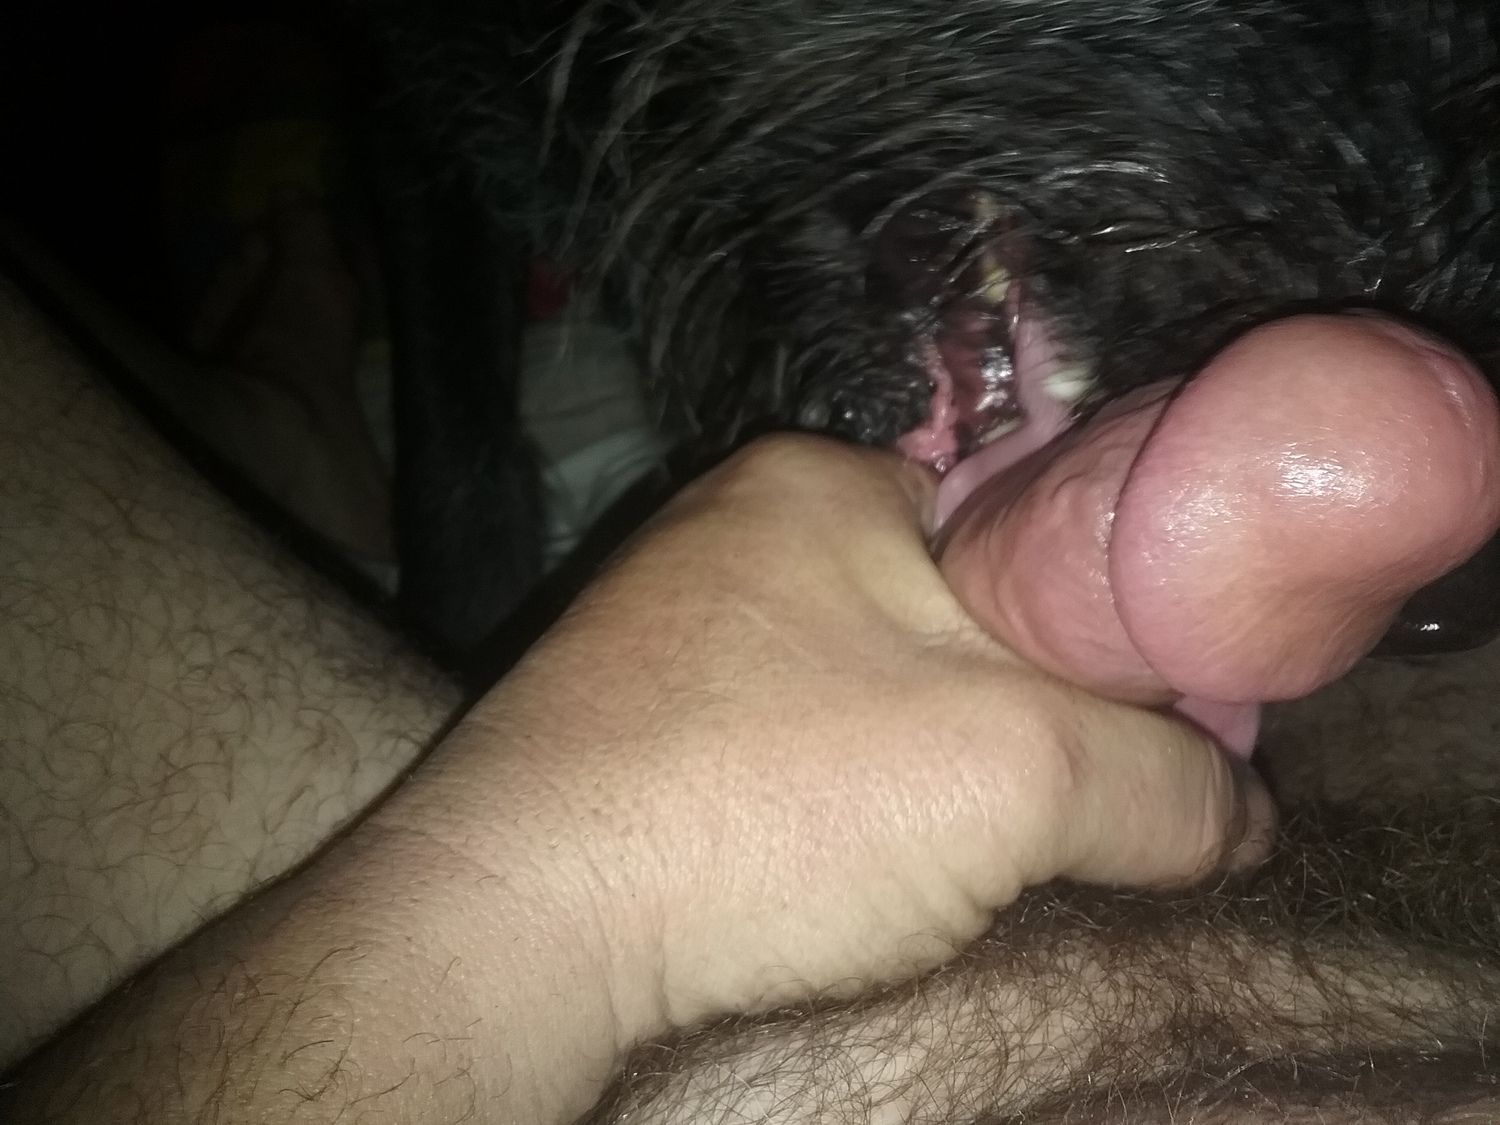 Licking human penis